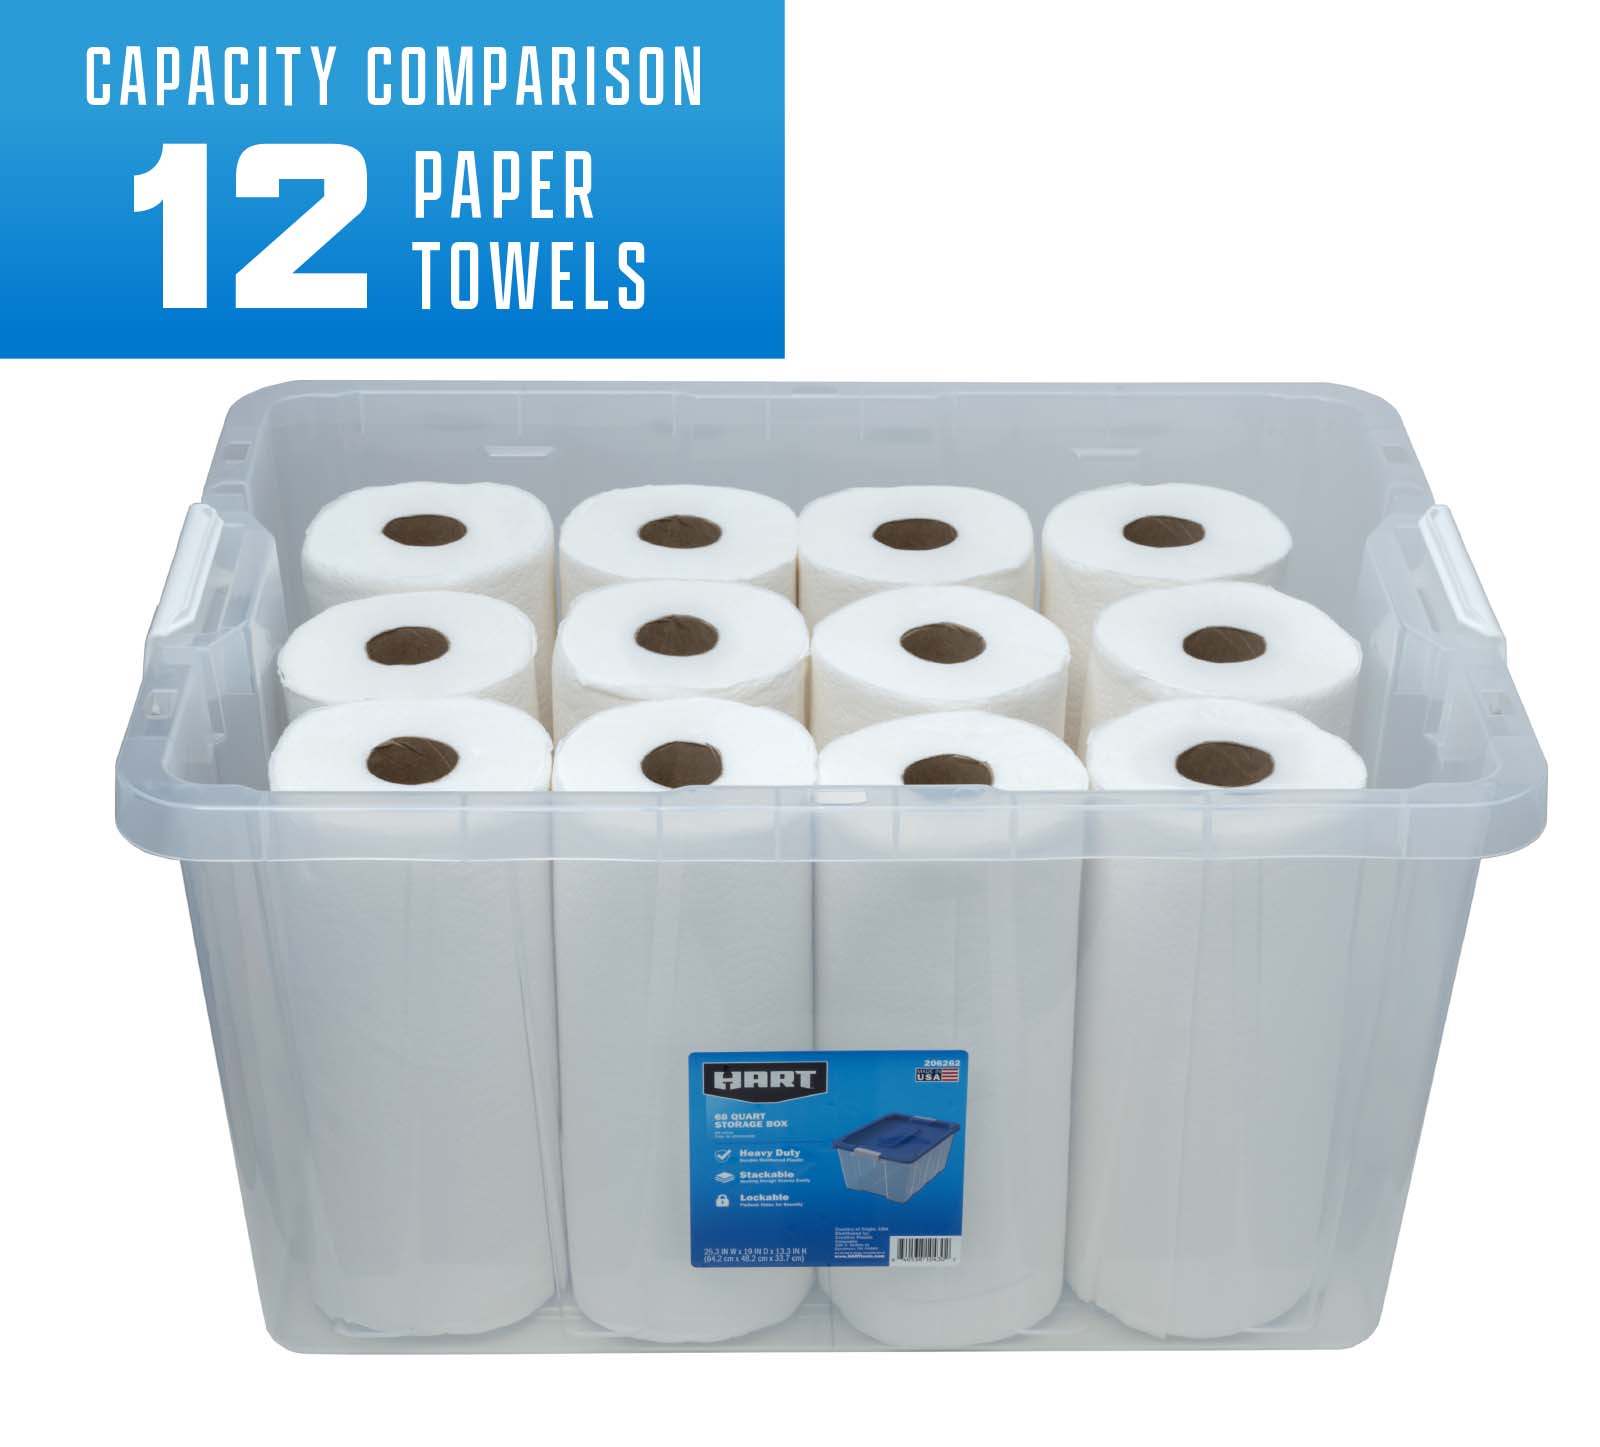 Capacity comparison 12 paper towels